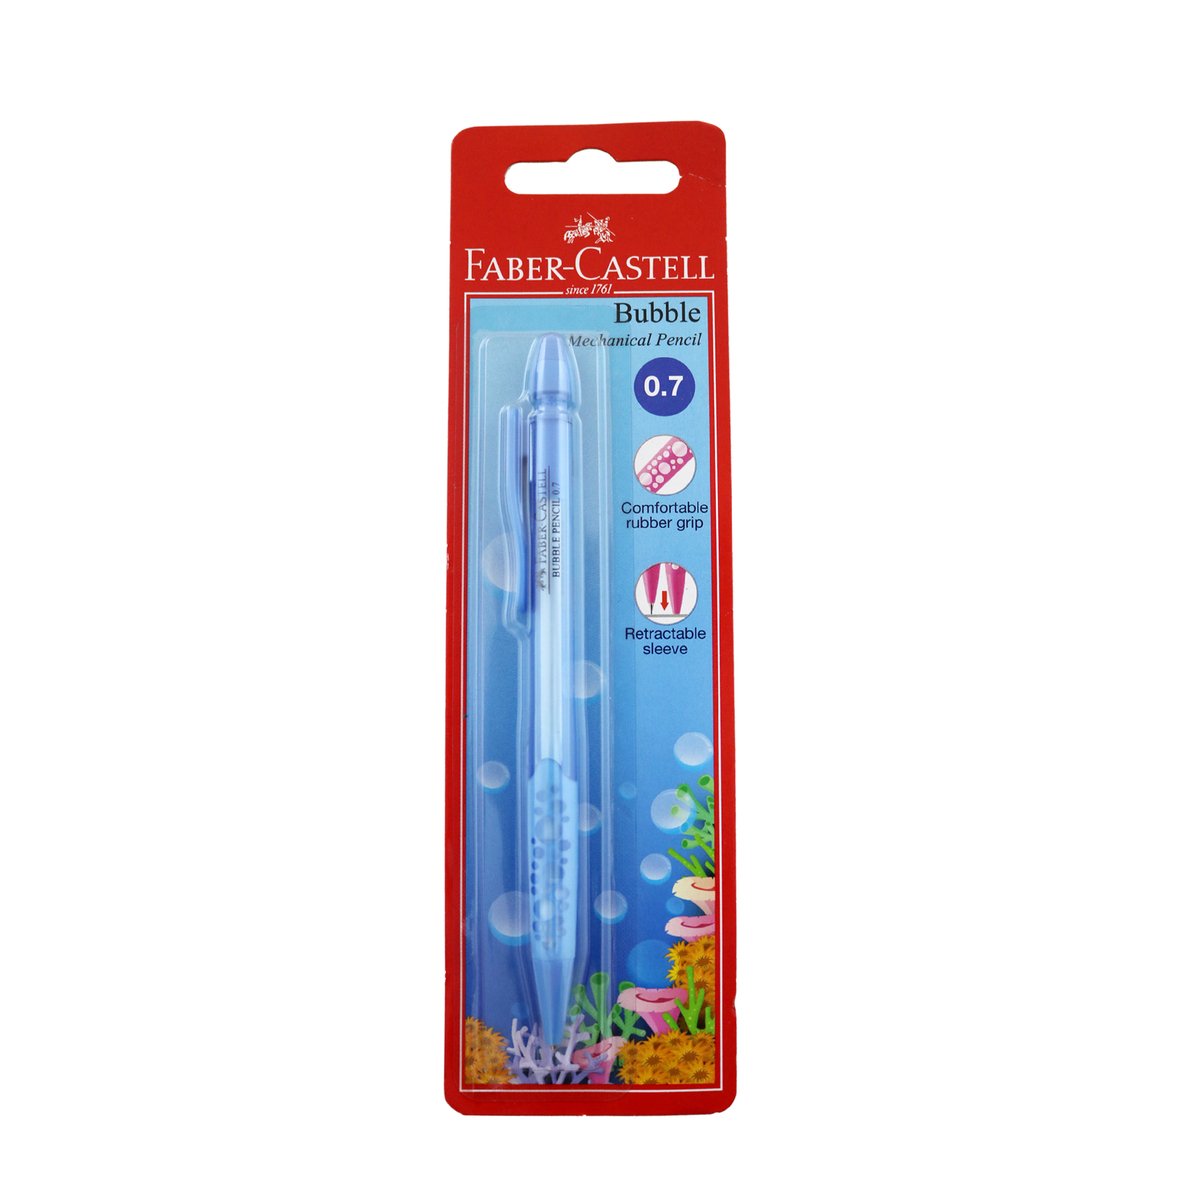 Faber Castell   Bubble Pencil 130004 0.7 1s